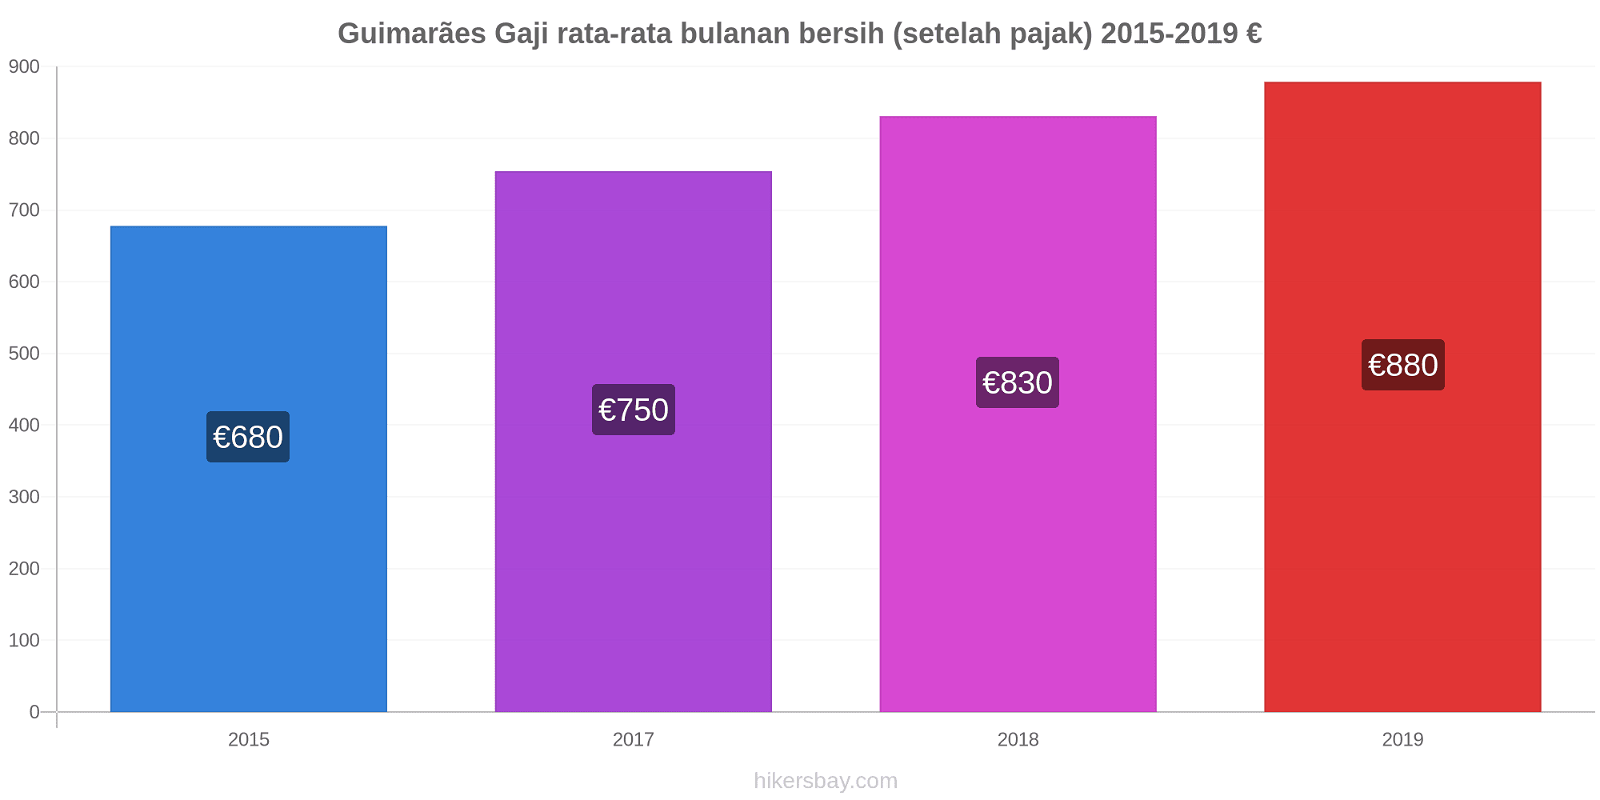 Guimarães perubahan harga Gaji rata-rata bulanan bersih (setelah pajak) hikersbay.com